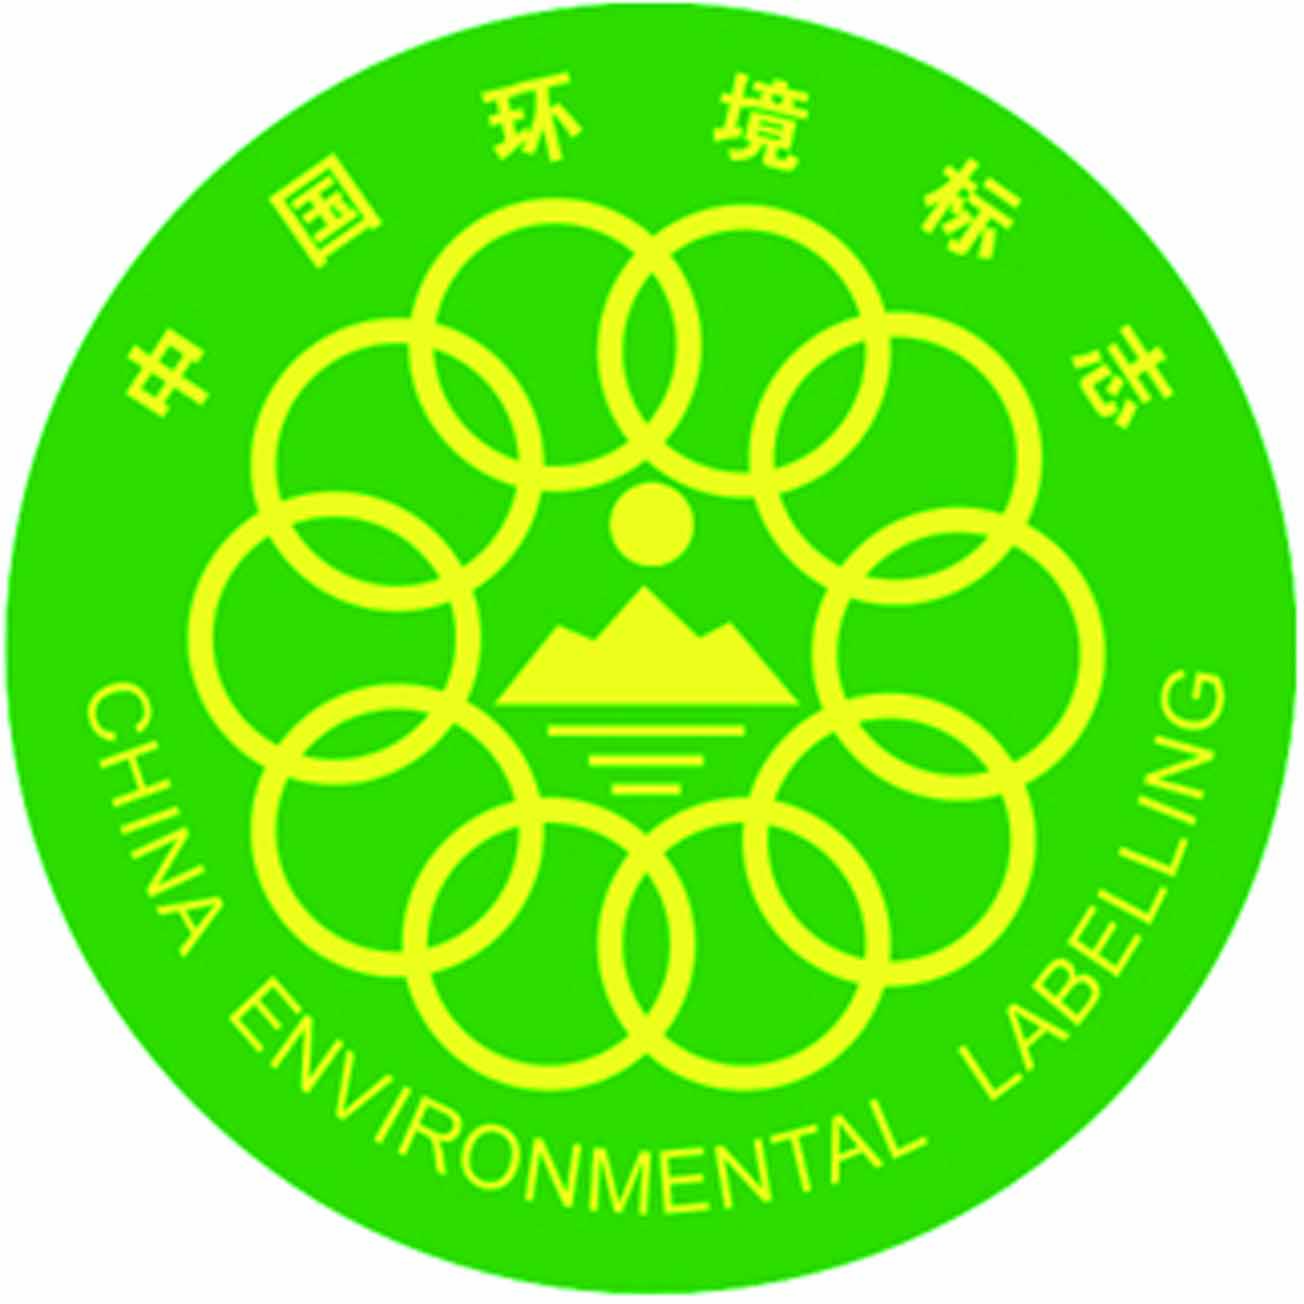 中国环保标志图片